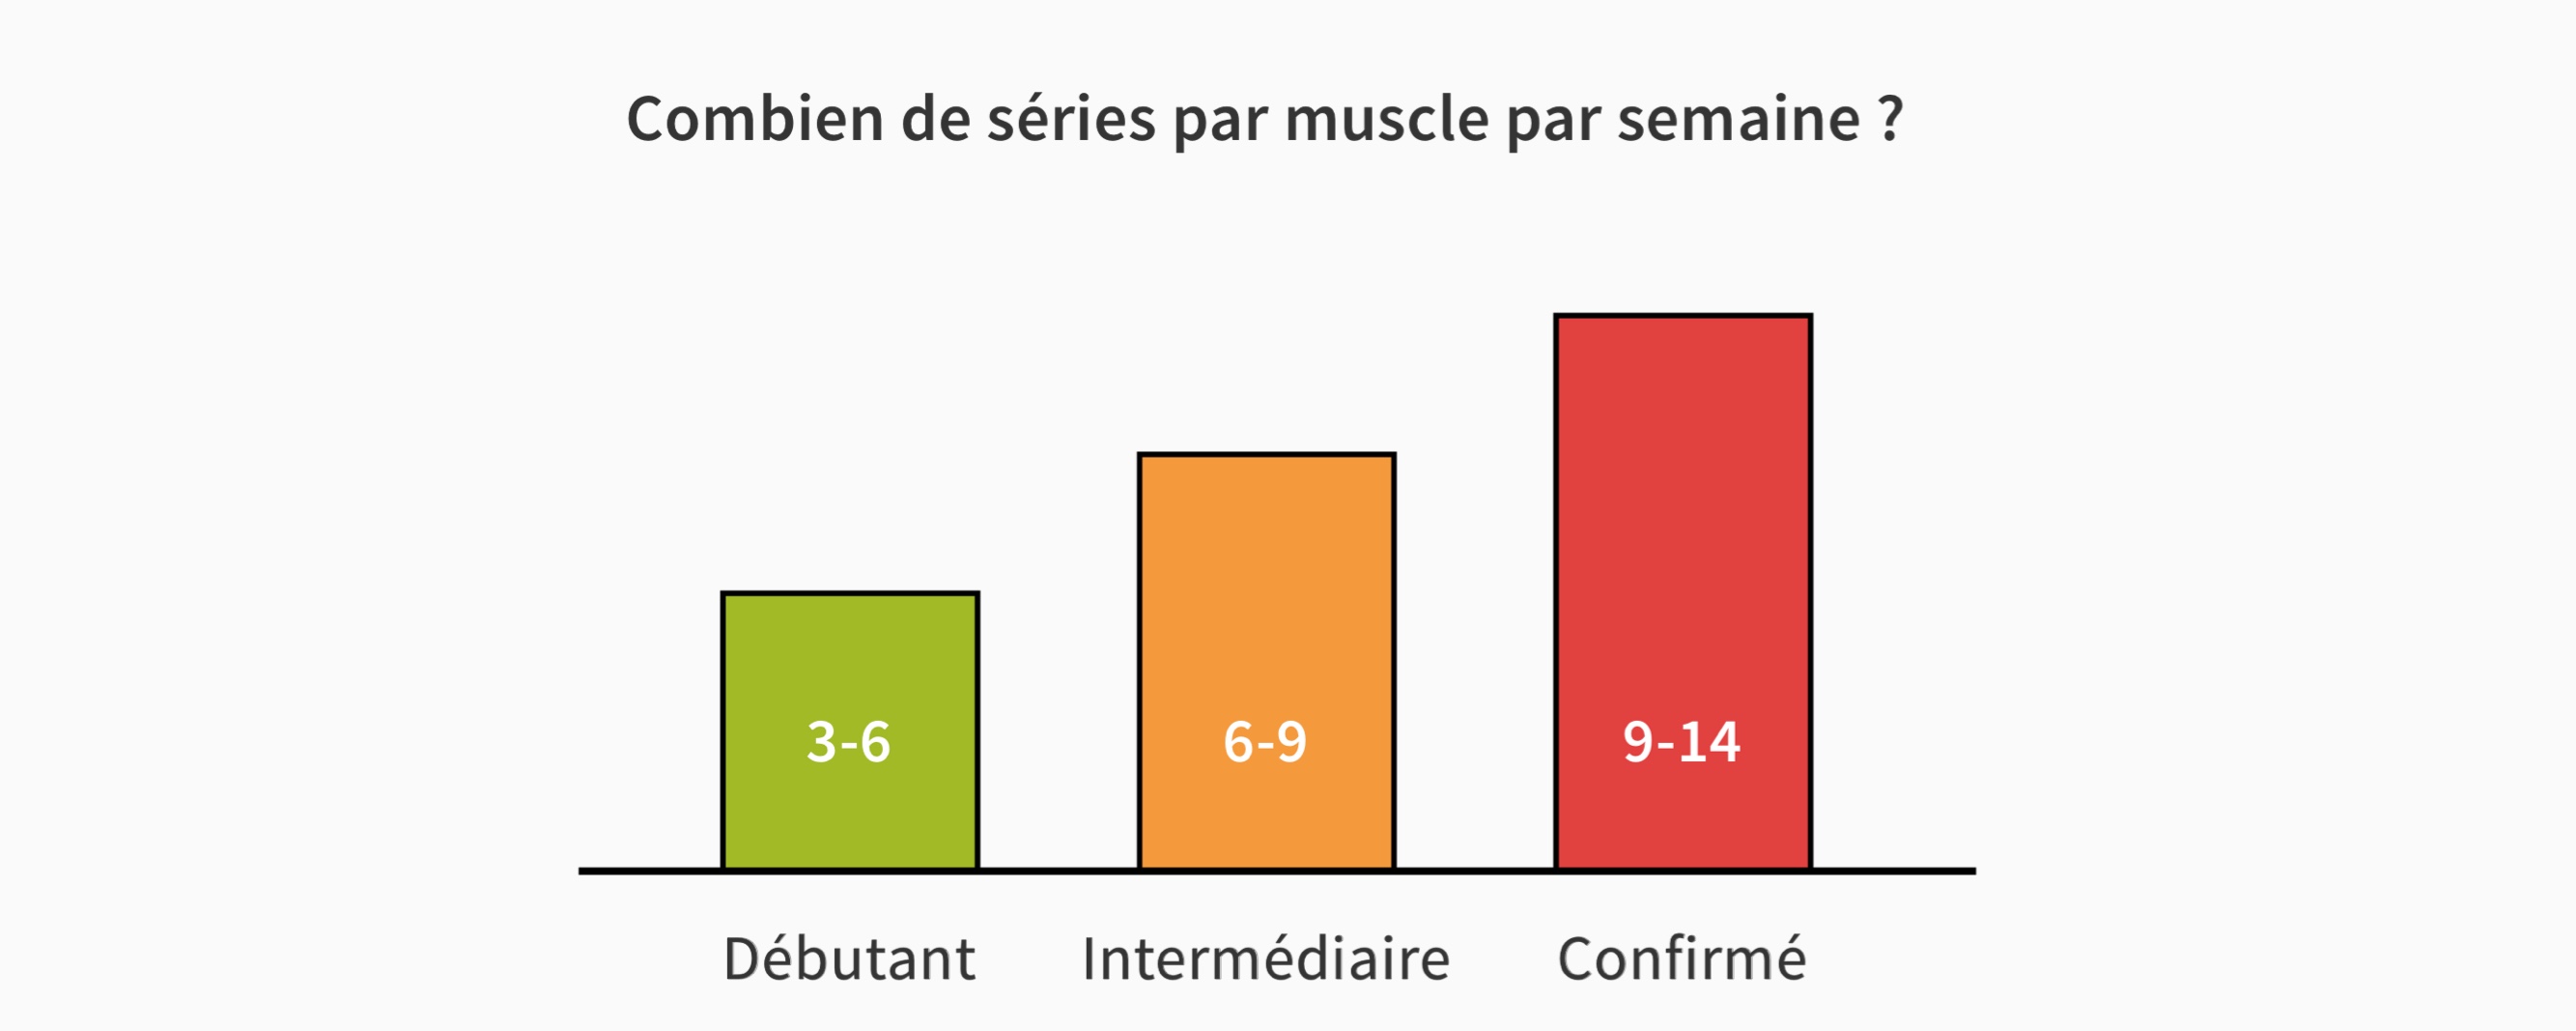 Combien de séries par muscle par semaine ?